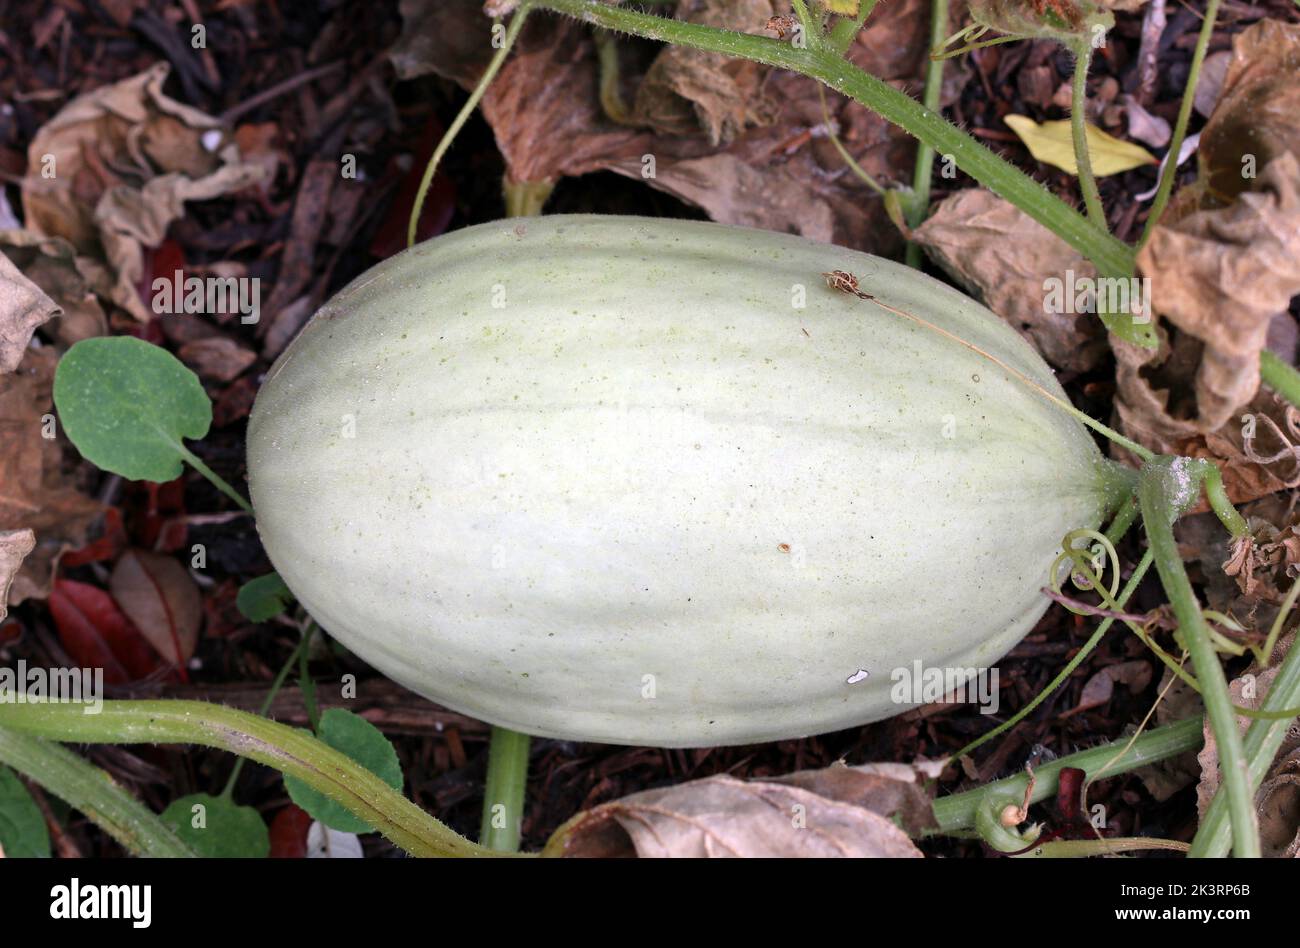 Immagine a cornice di un melone di forma ovale grigio-verde Mangomel, una nuova varietà, che matura sul terreno. Cottage giardino, Inghilterra meridionale, settembre Foto Stock